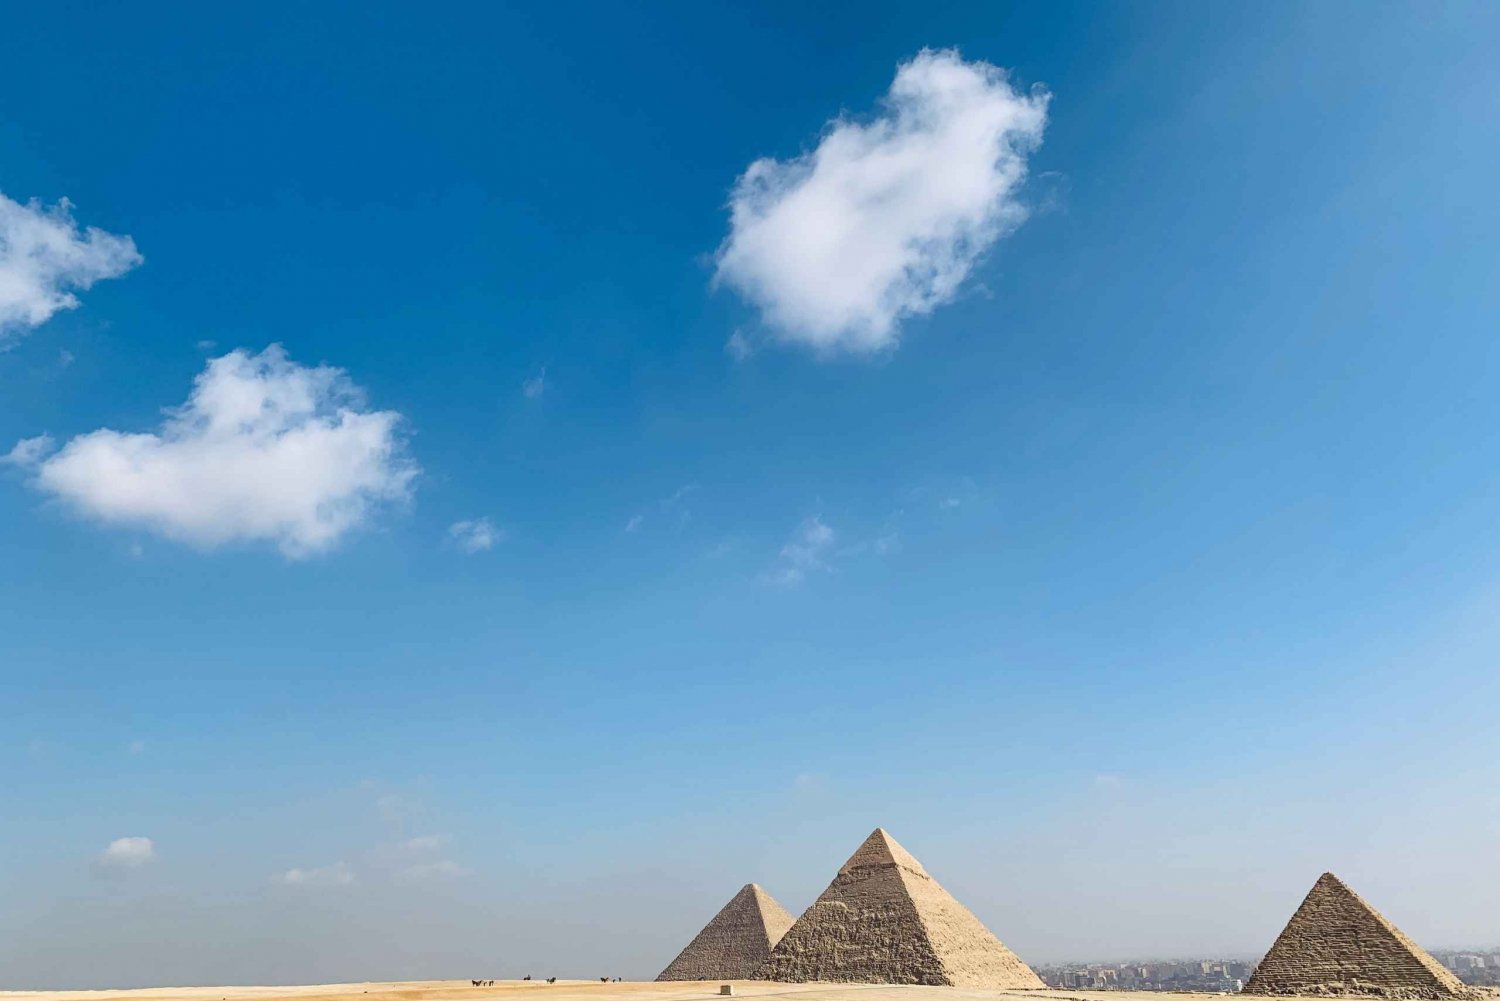 Le Caire : Excursion privée d'une journée aux pyramides de Gizeh et aux monuments du Caire